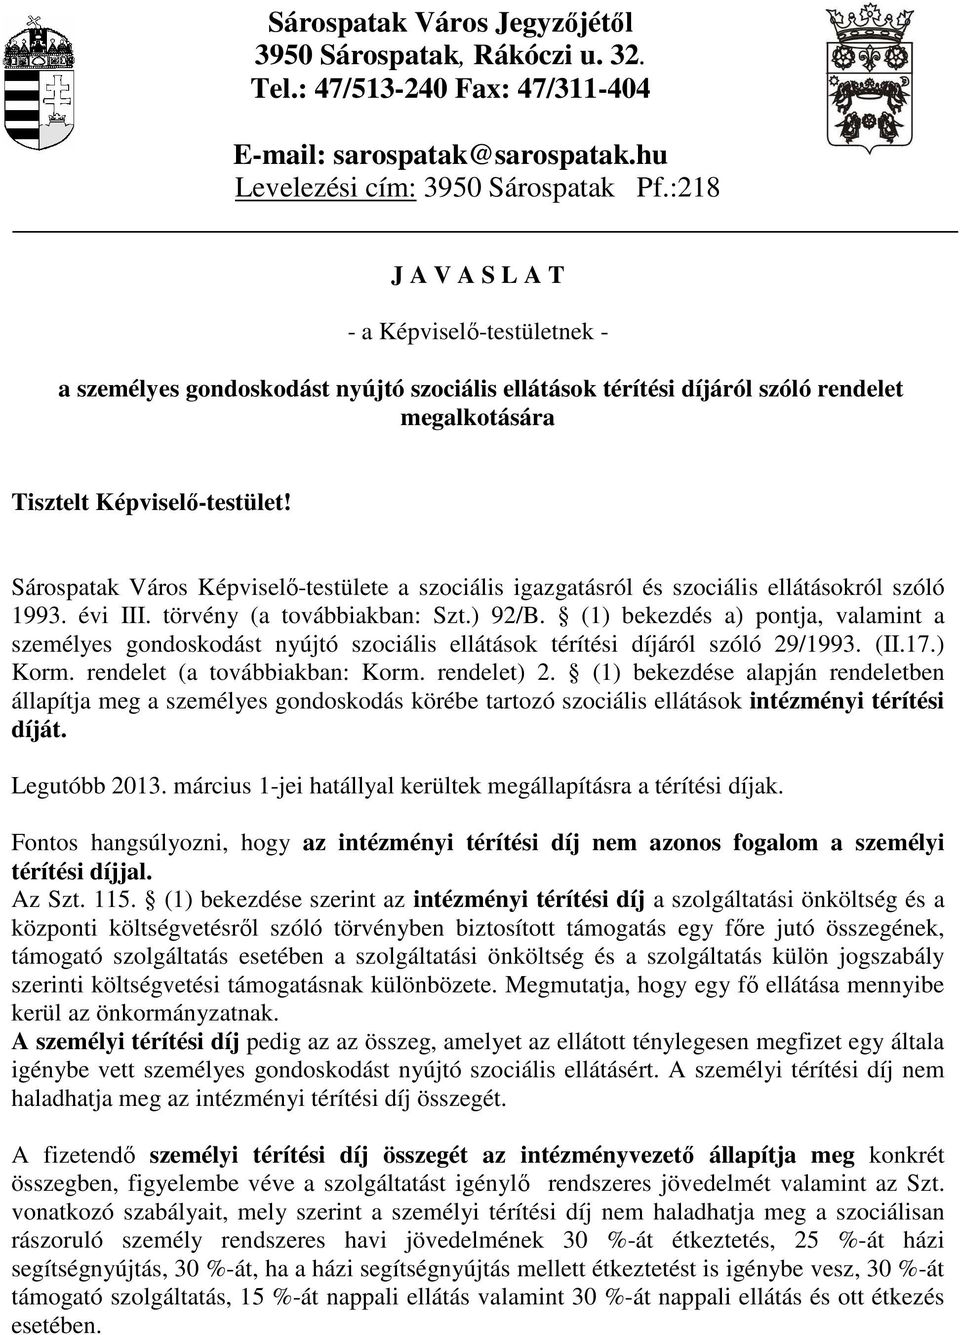 Sárospatak Város Képviselı-testülete a szociális igazgatásról és szociális ellátásokról szóló 1993. évi III. törvény (a továbbiakban: Szt.) 92/B.